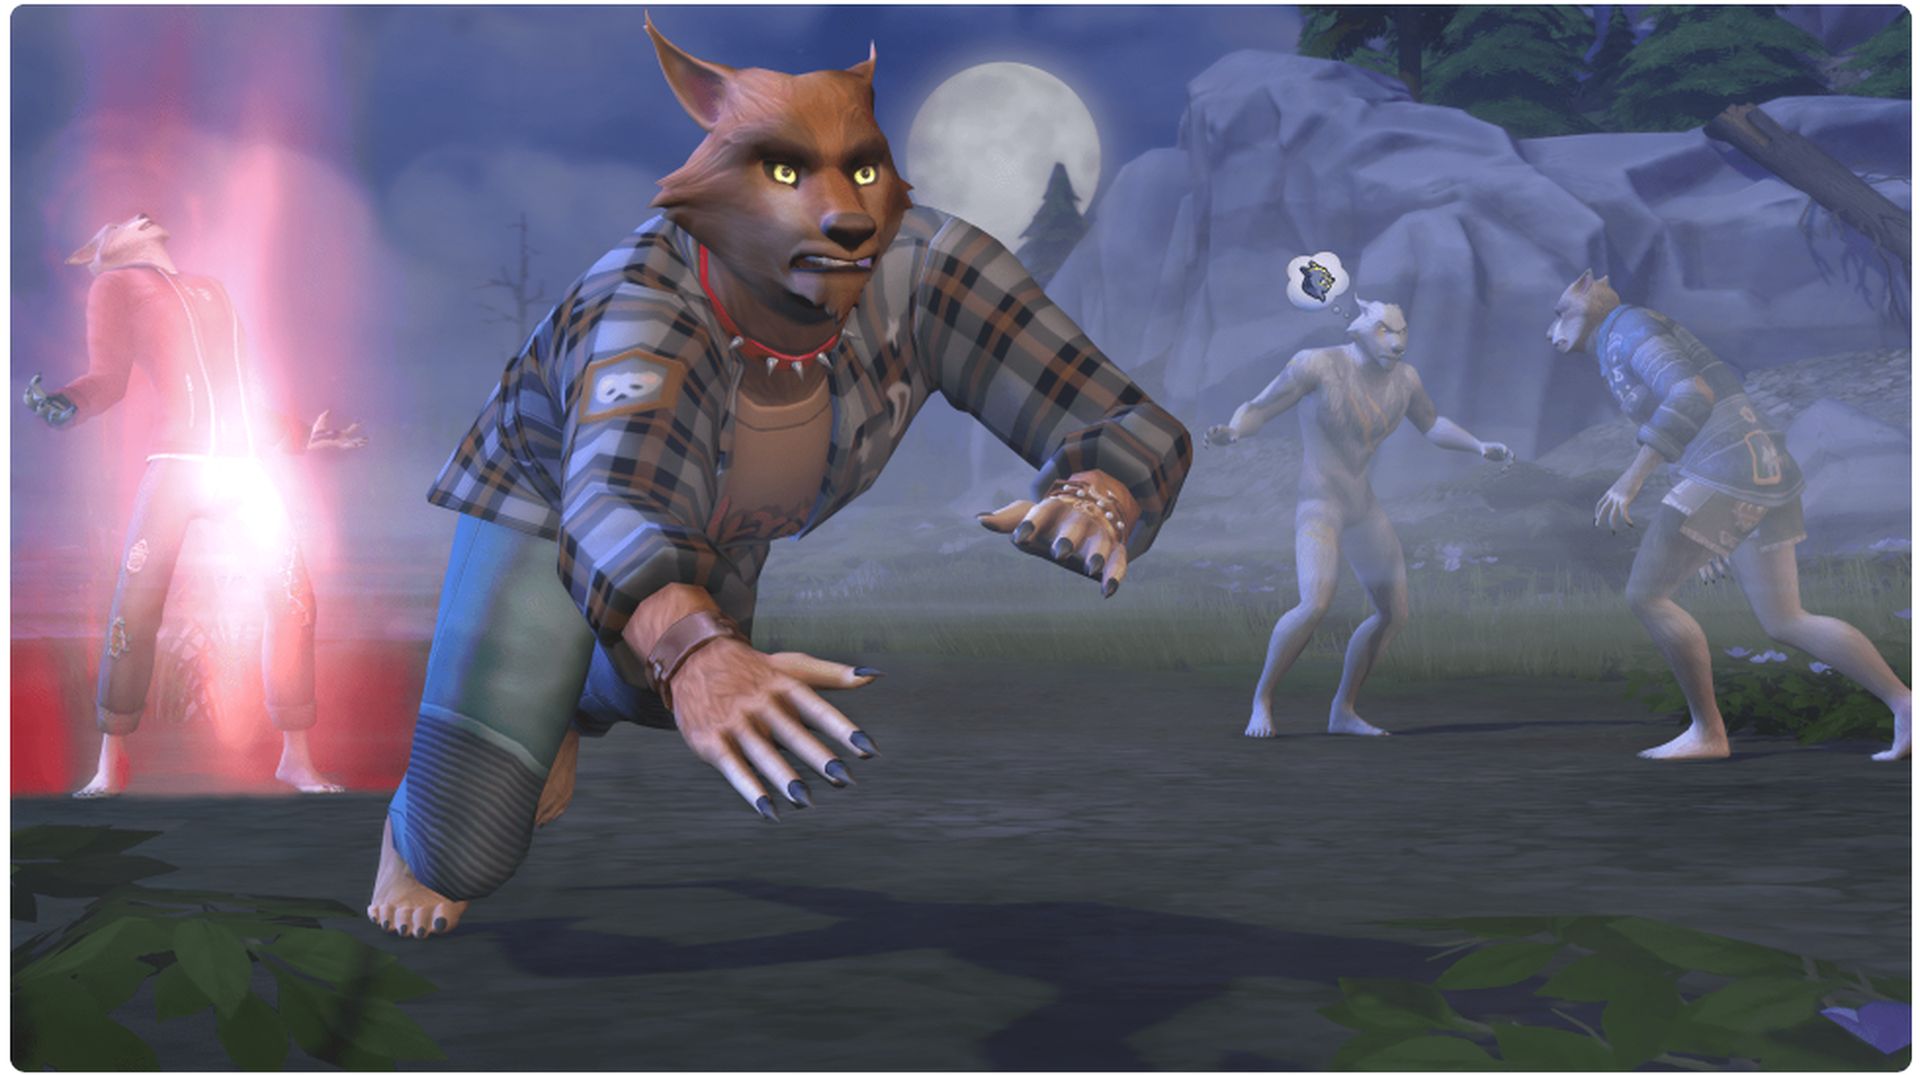 In diesem Artikel werden wir behandeln, wie man Werwolf-Sims 4 wird, damit man seinen Sim in eine nachtaktive Kreatur verwandeln und unter anderen Angst verbreiten kann.